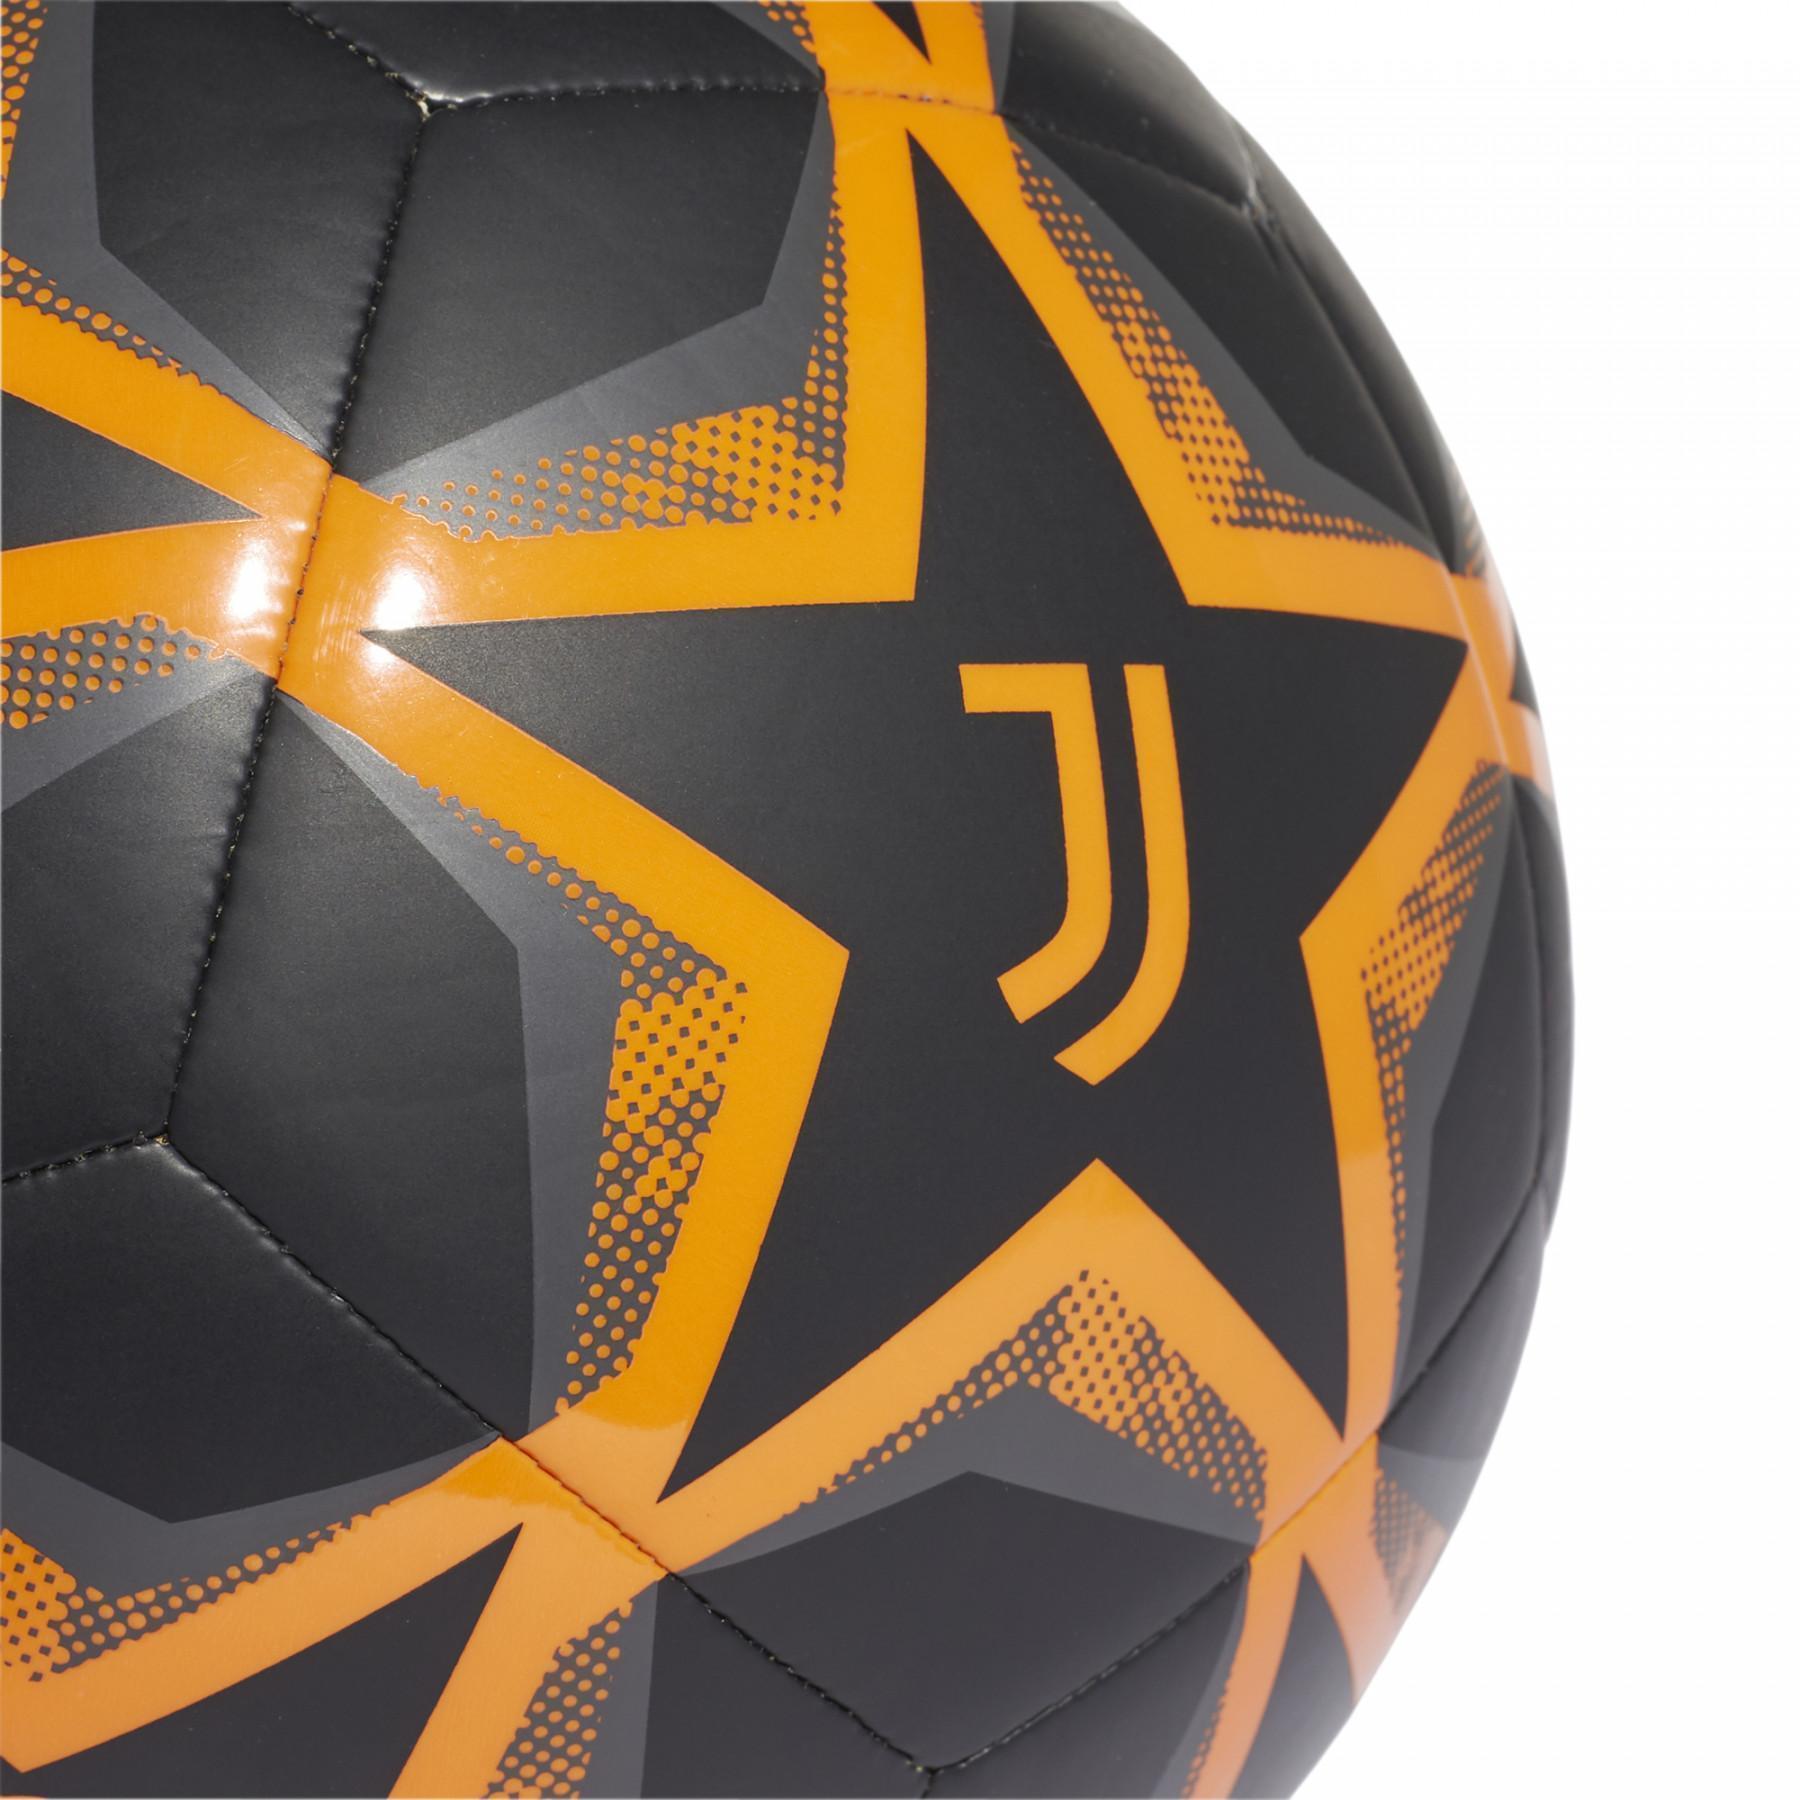 Bola final da Liga dos Campeões Juventus 2020